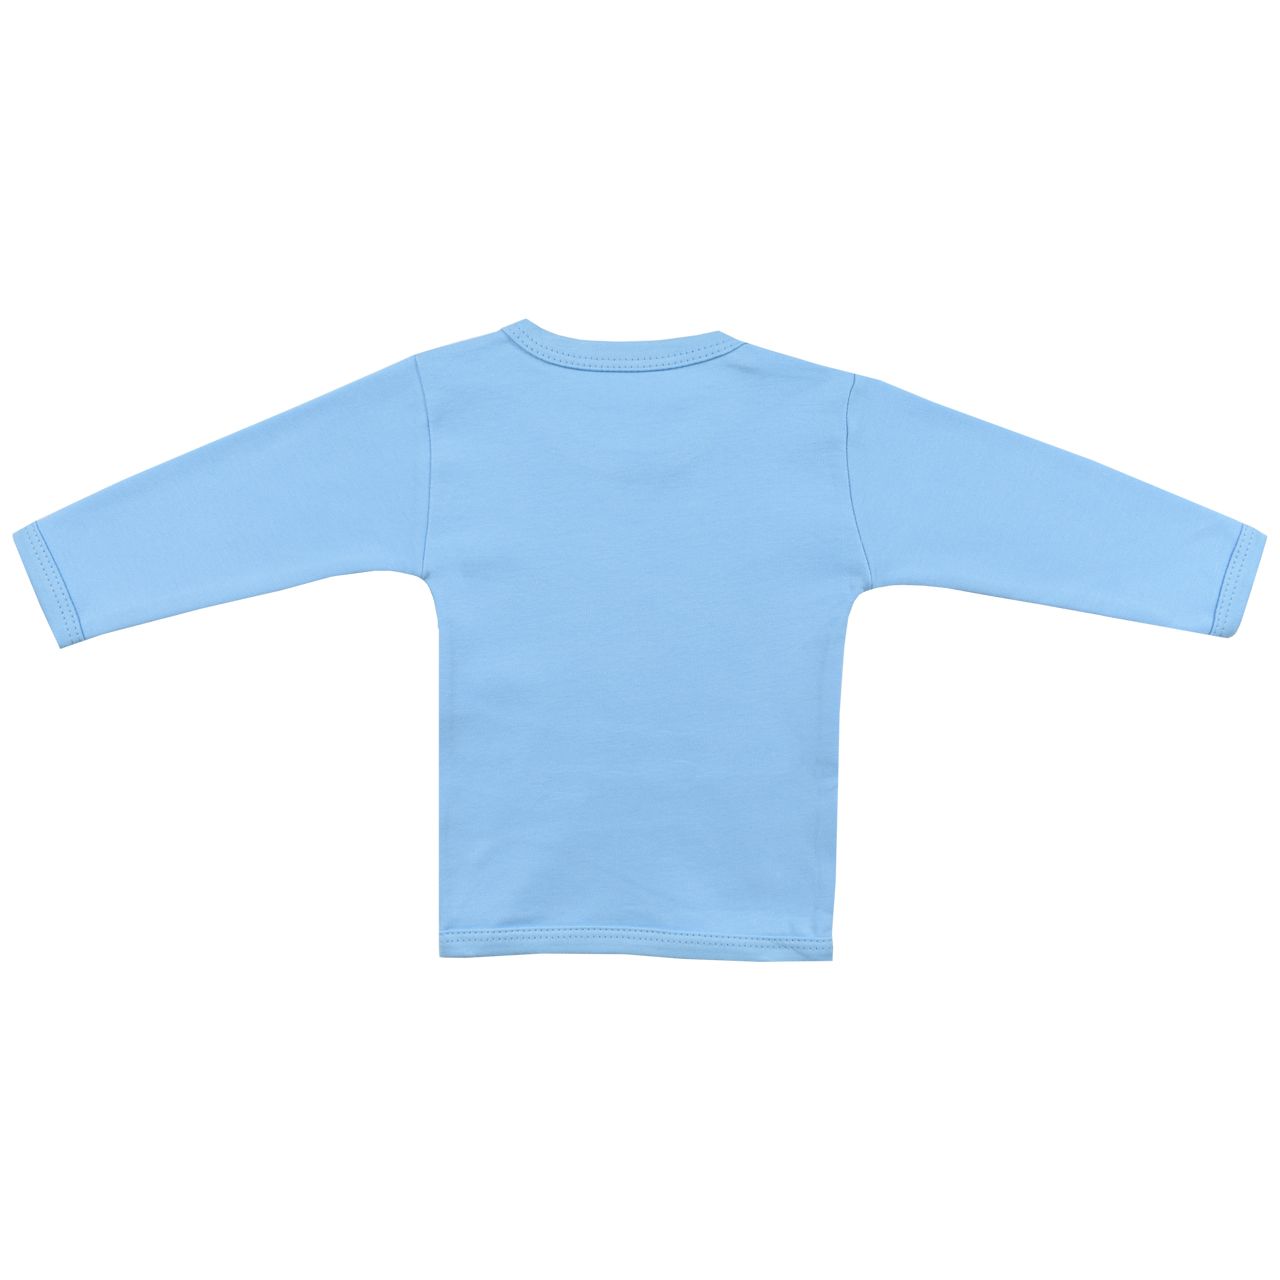 تی شرت آستین بلند نوزادی اسپیکو مدل کاج کد 2 -  - 3